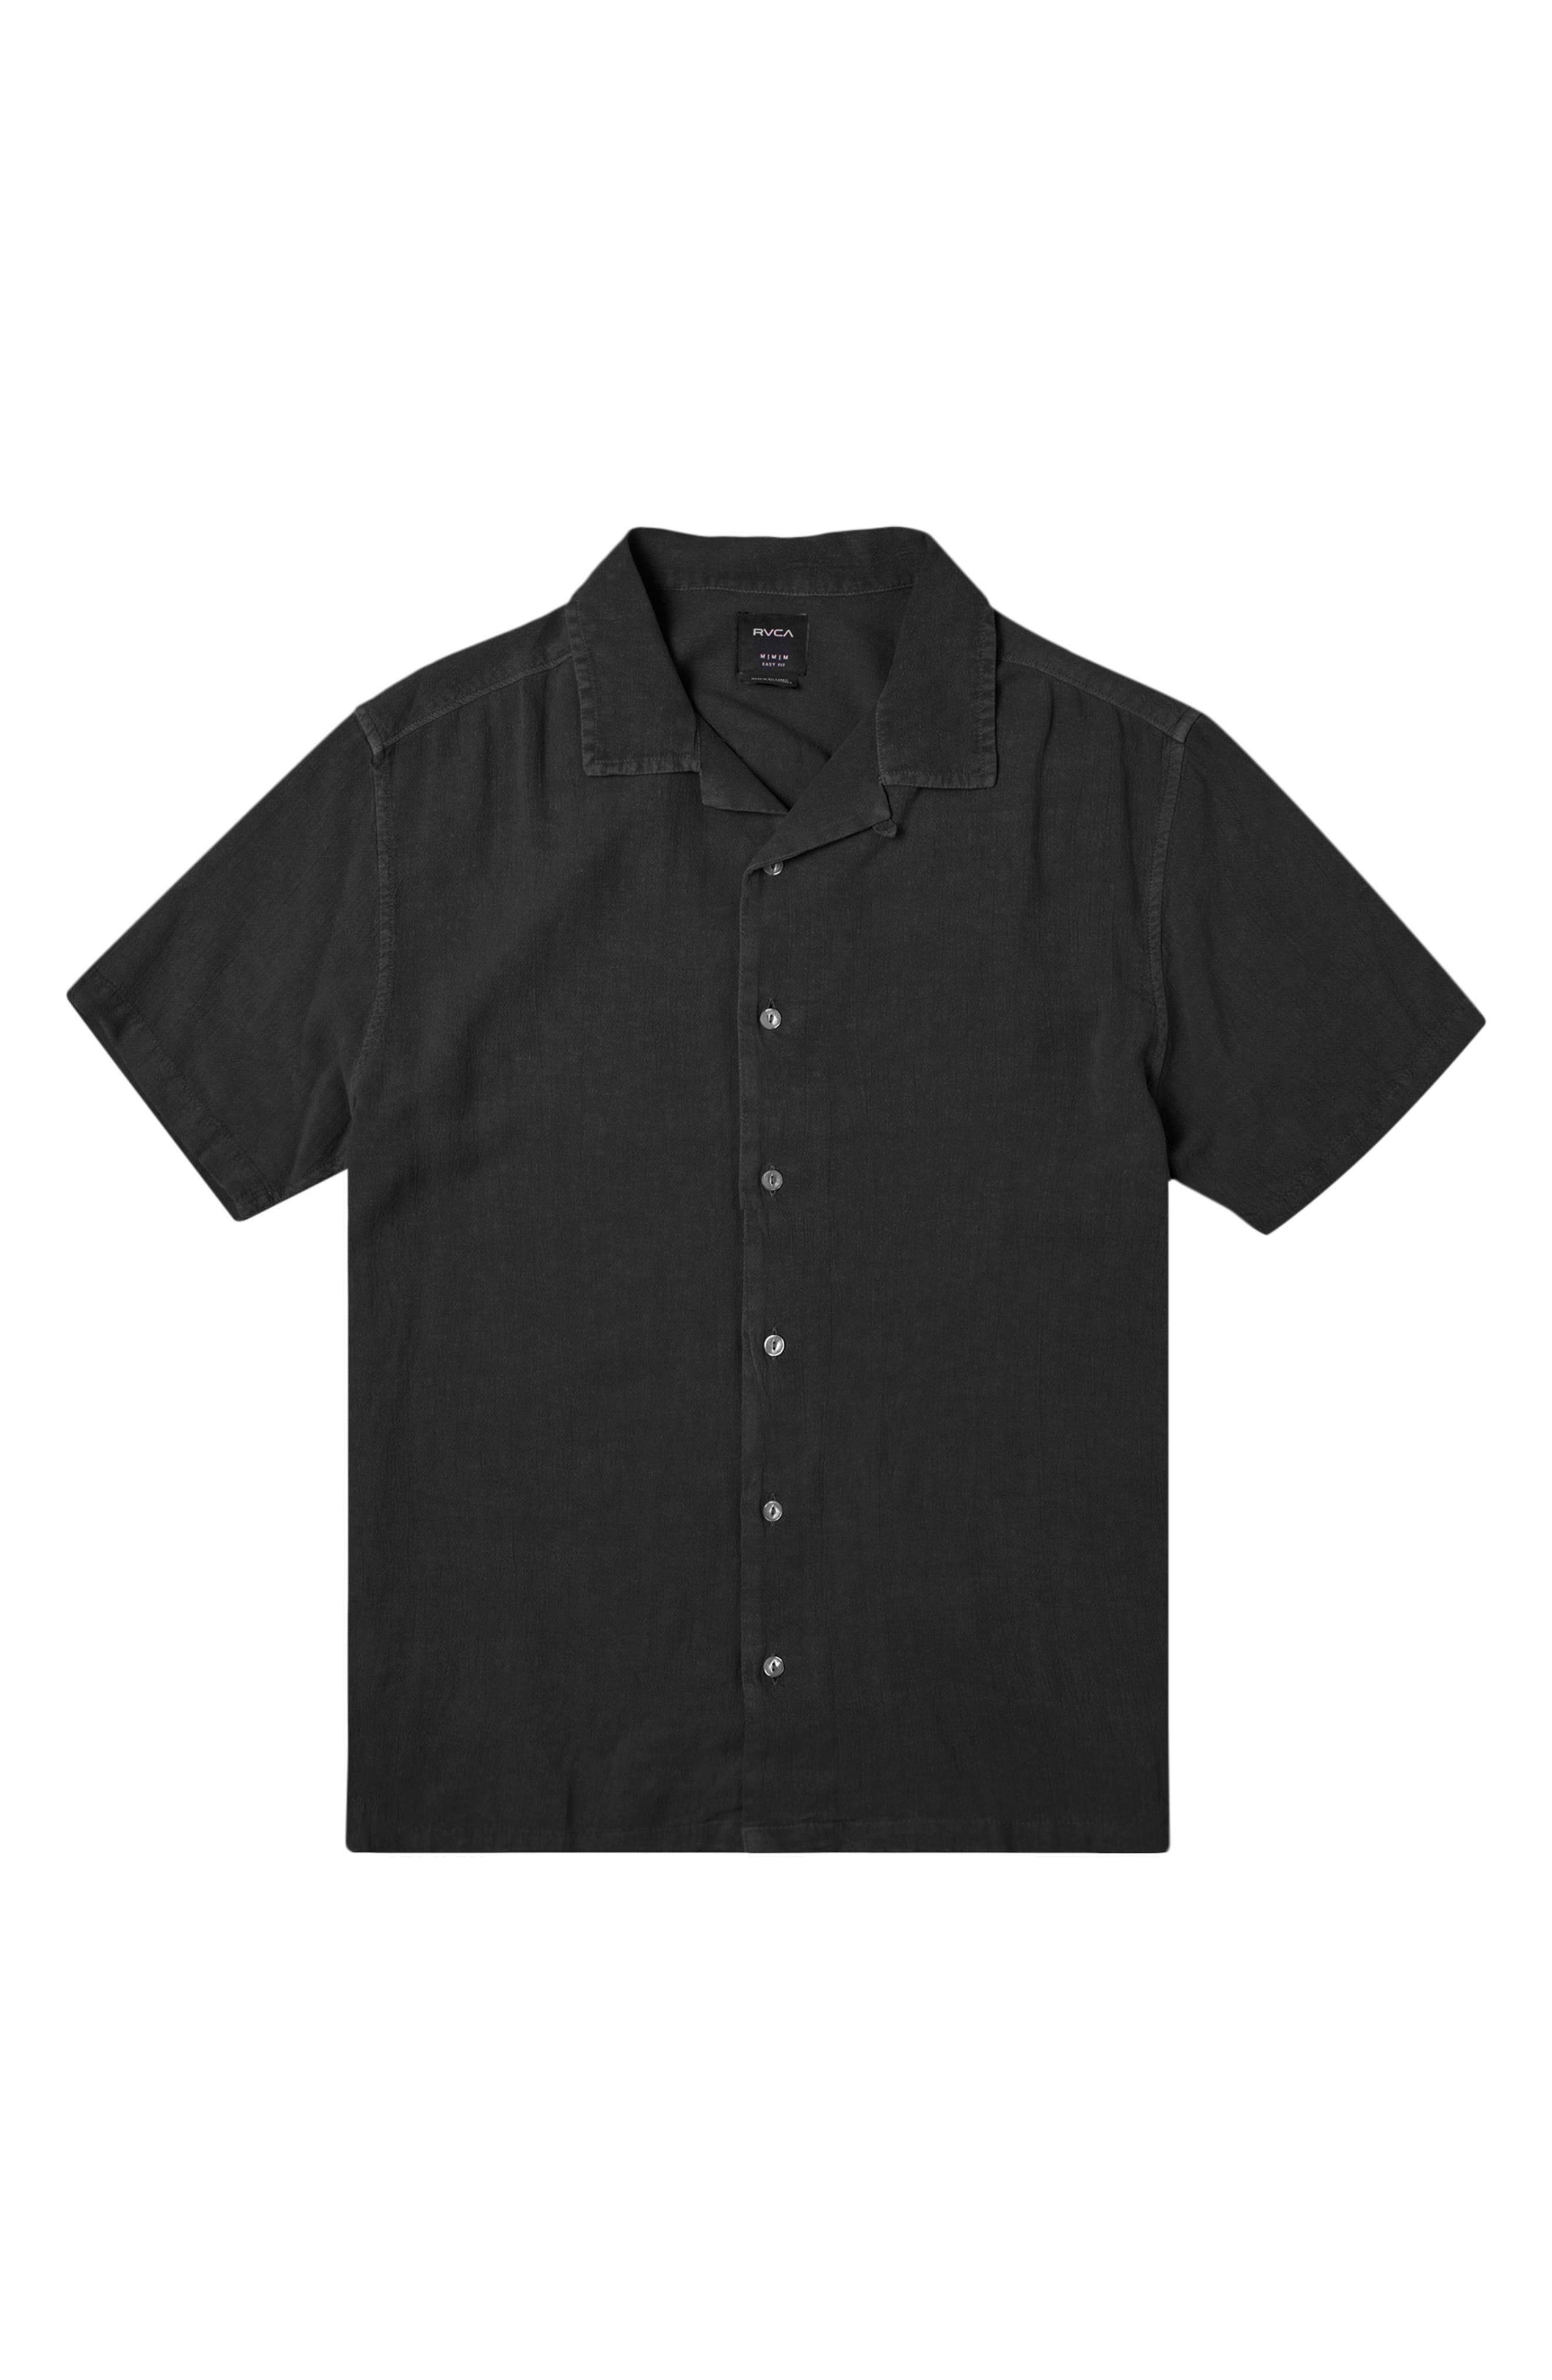 UPC 194687123999 - Men's Rvca Beat Short Sleeve Button-Up Shirt, Size ...